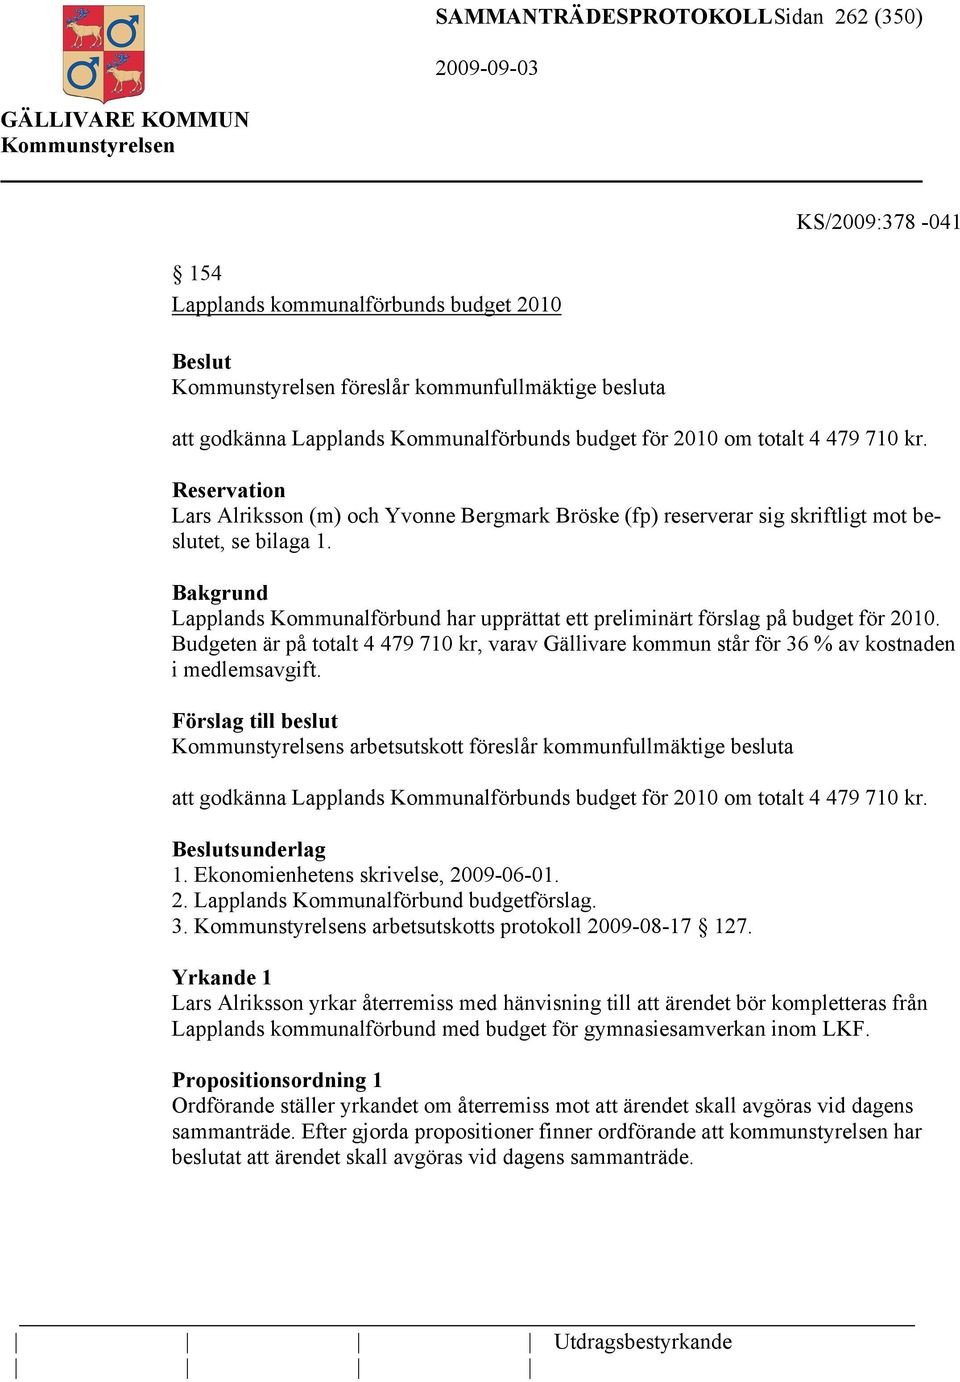 Lapplands Kommunalförbund har upprättat ett preliminärt förslag på budget för 2010. Budgeten är på totalt 4 479 710 kr, varav Gällivare kommun står för 36 % av kostnaden i medlemsavgift.